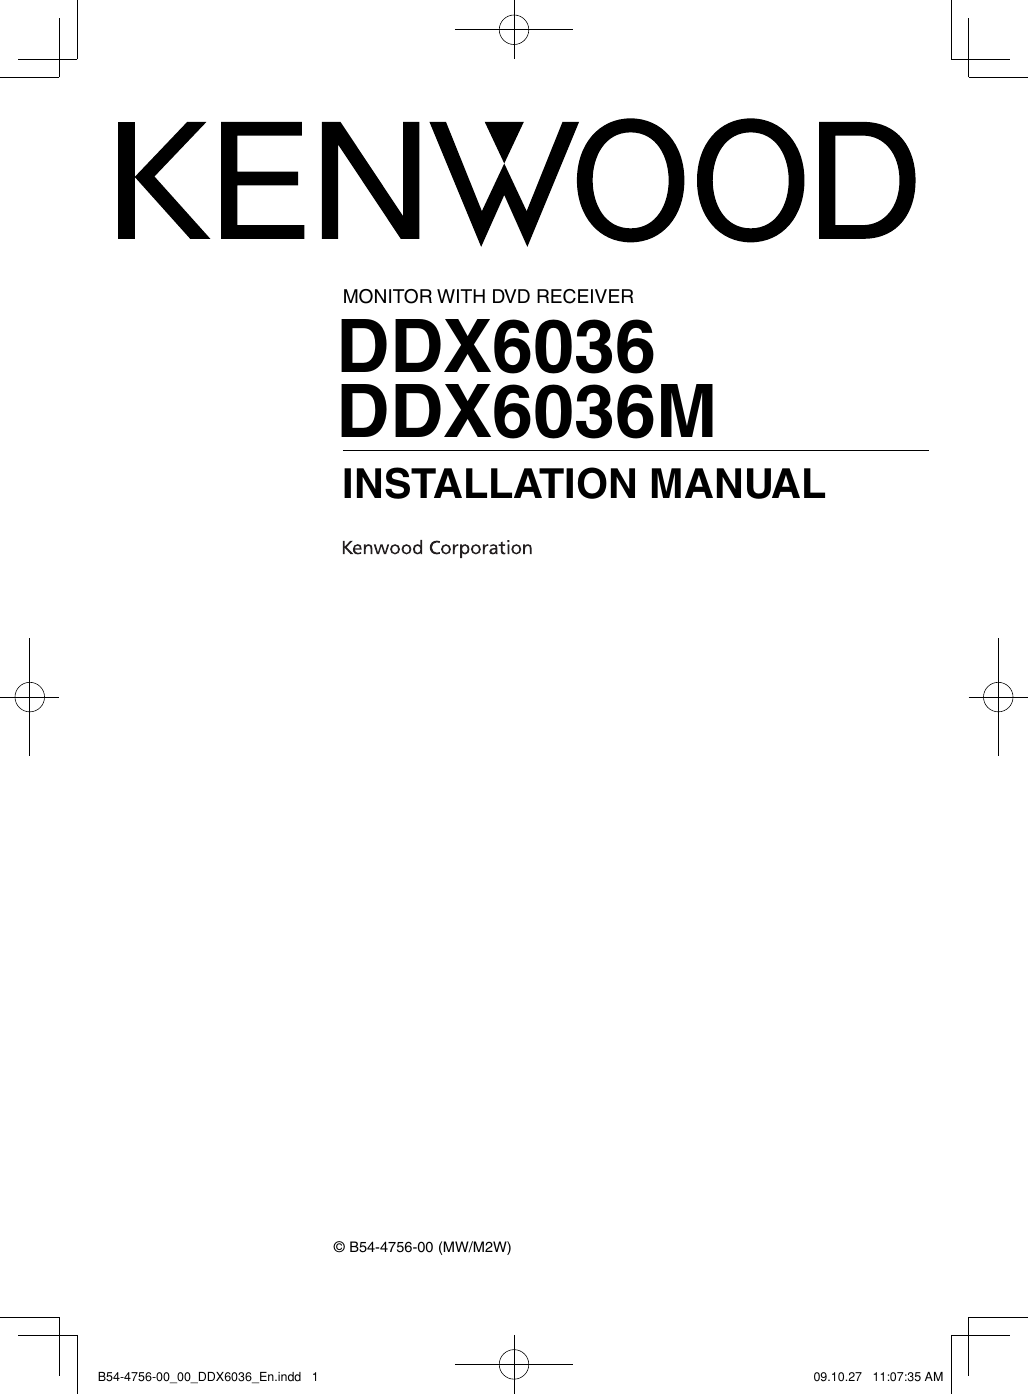 Kenwood Ddx6036 Users Manual B54 4756 00_00_DDX6036_En